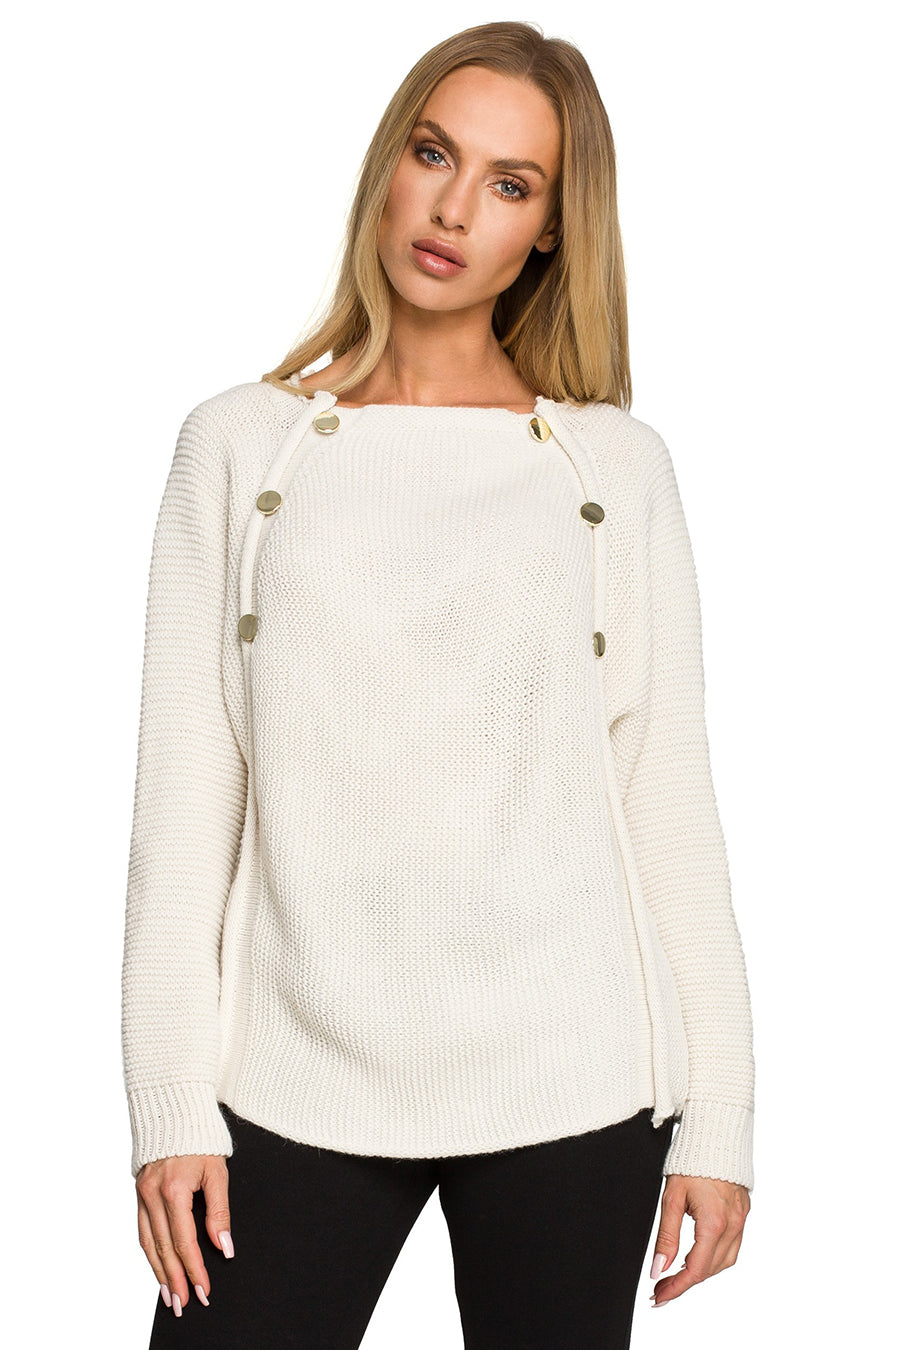 Дамски пуловер Jasbeer, Бял 3